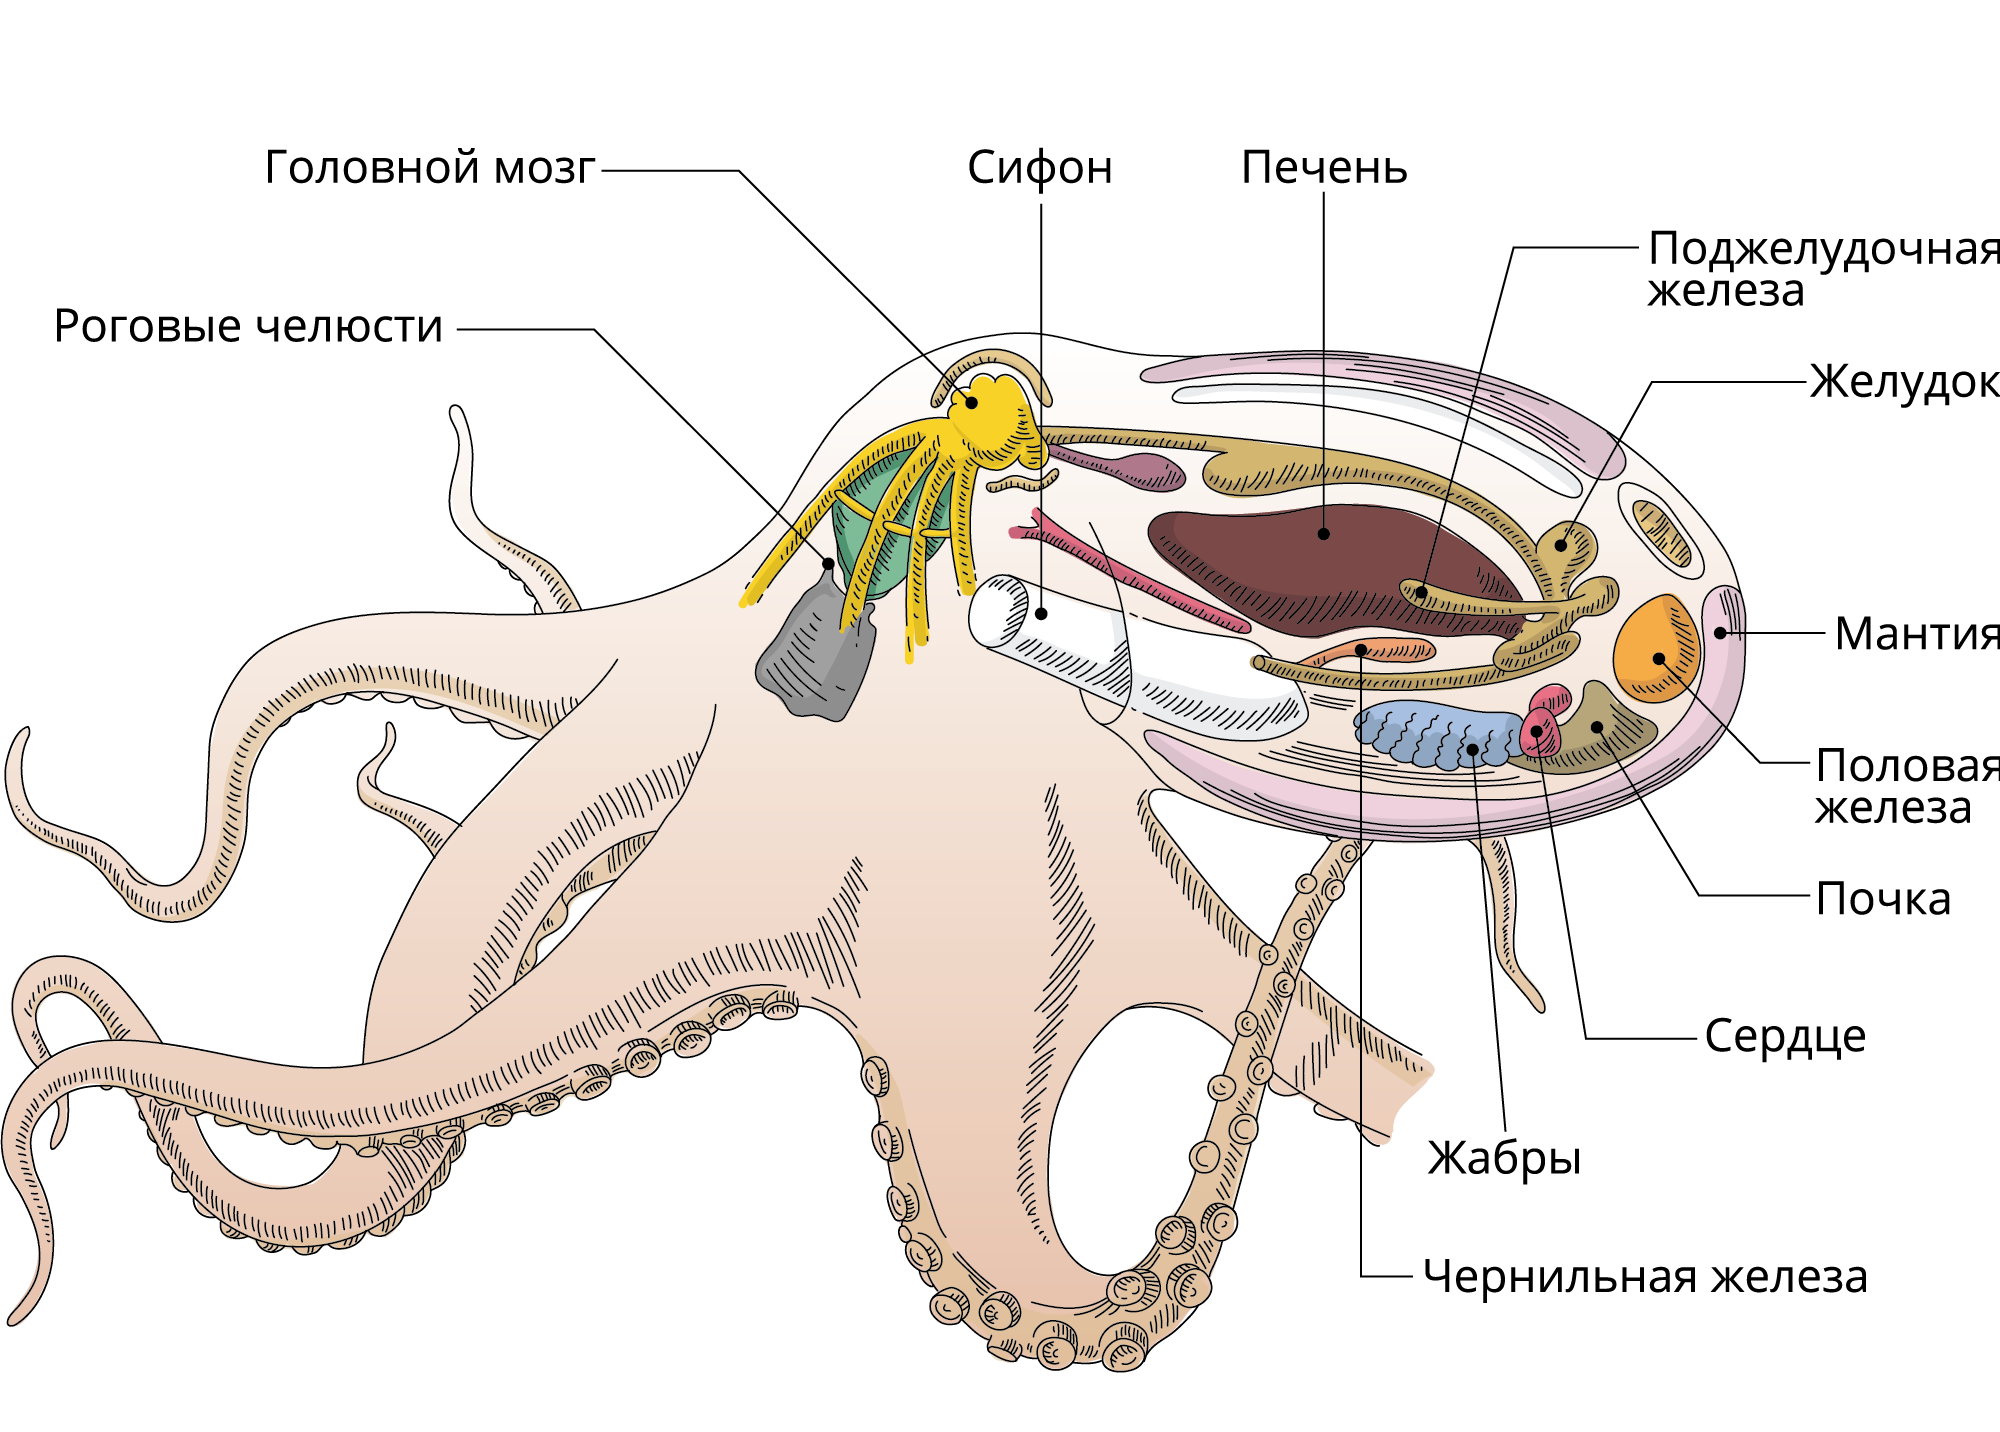 Отдел головоногие. Выделительная система головоногих. Выделительная система осьминога. Осьминог анатомия выделительная система. Головоногие моллюски пищеварительная система.